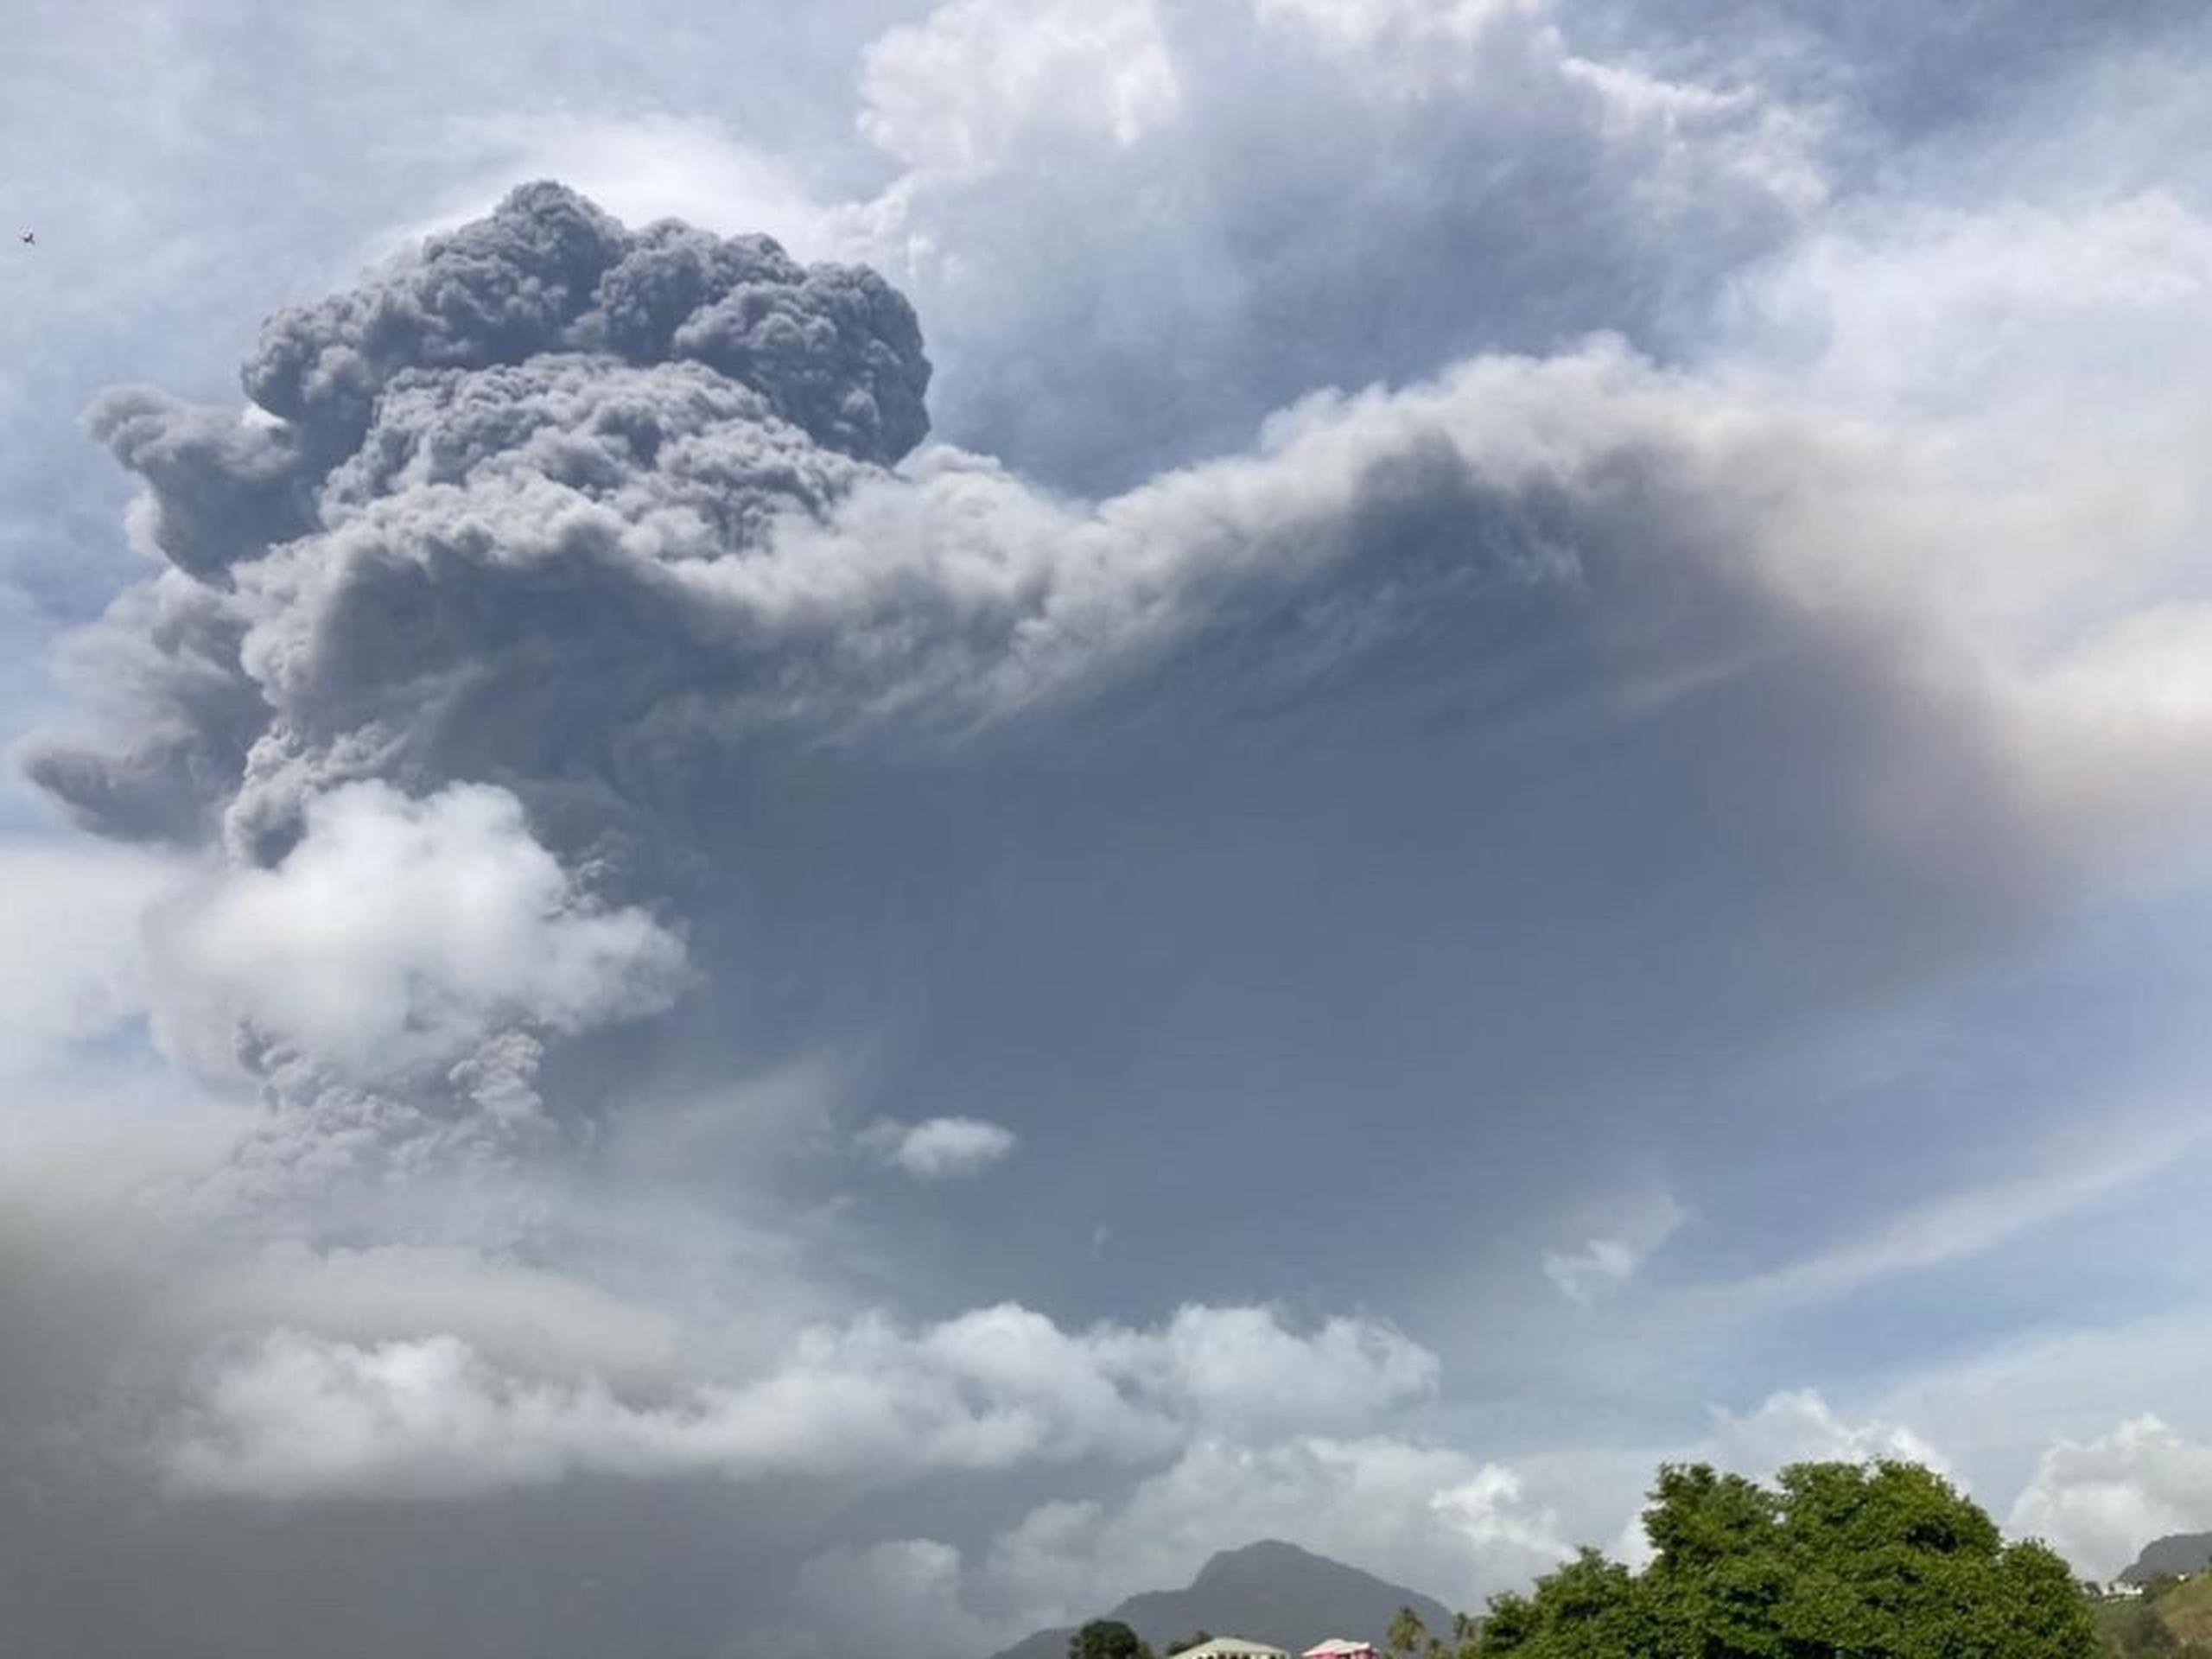 Robertson, del equipo científico del Centro de Investigación Sísmica de la Universidad de las Indias Occidentales (UWI, en inglés) en Trinidad y Tobago, indicó que la erupción “explosiva” del viernes se produjo tres meses después del inicio de otra “efusiva” en el volcán.